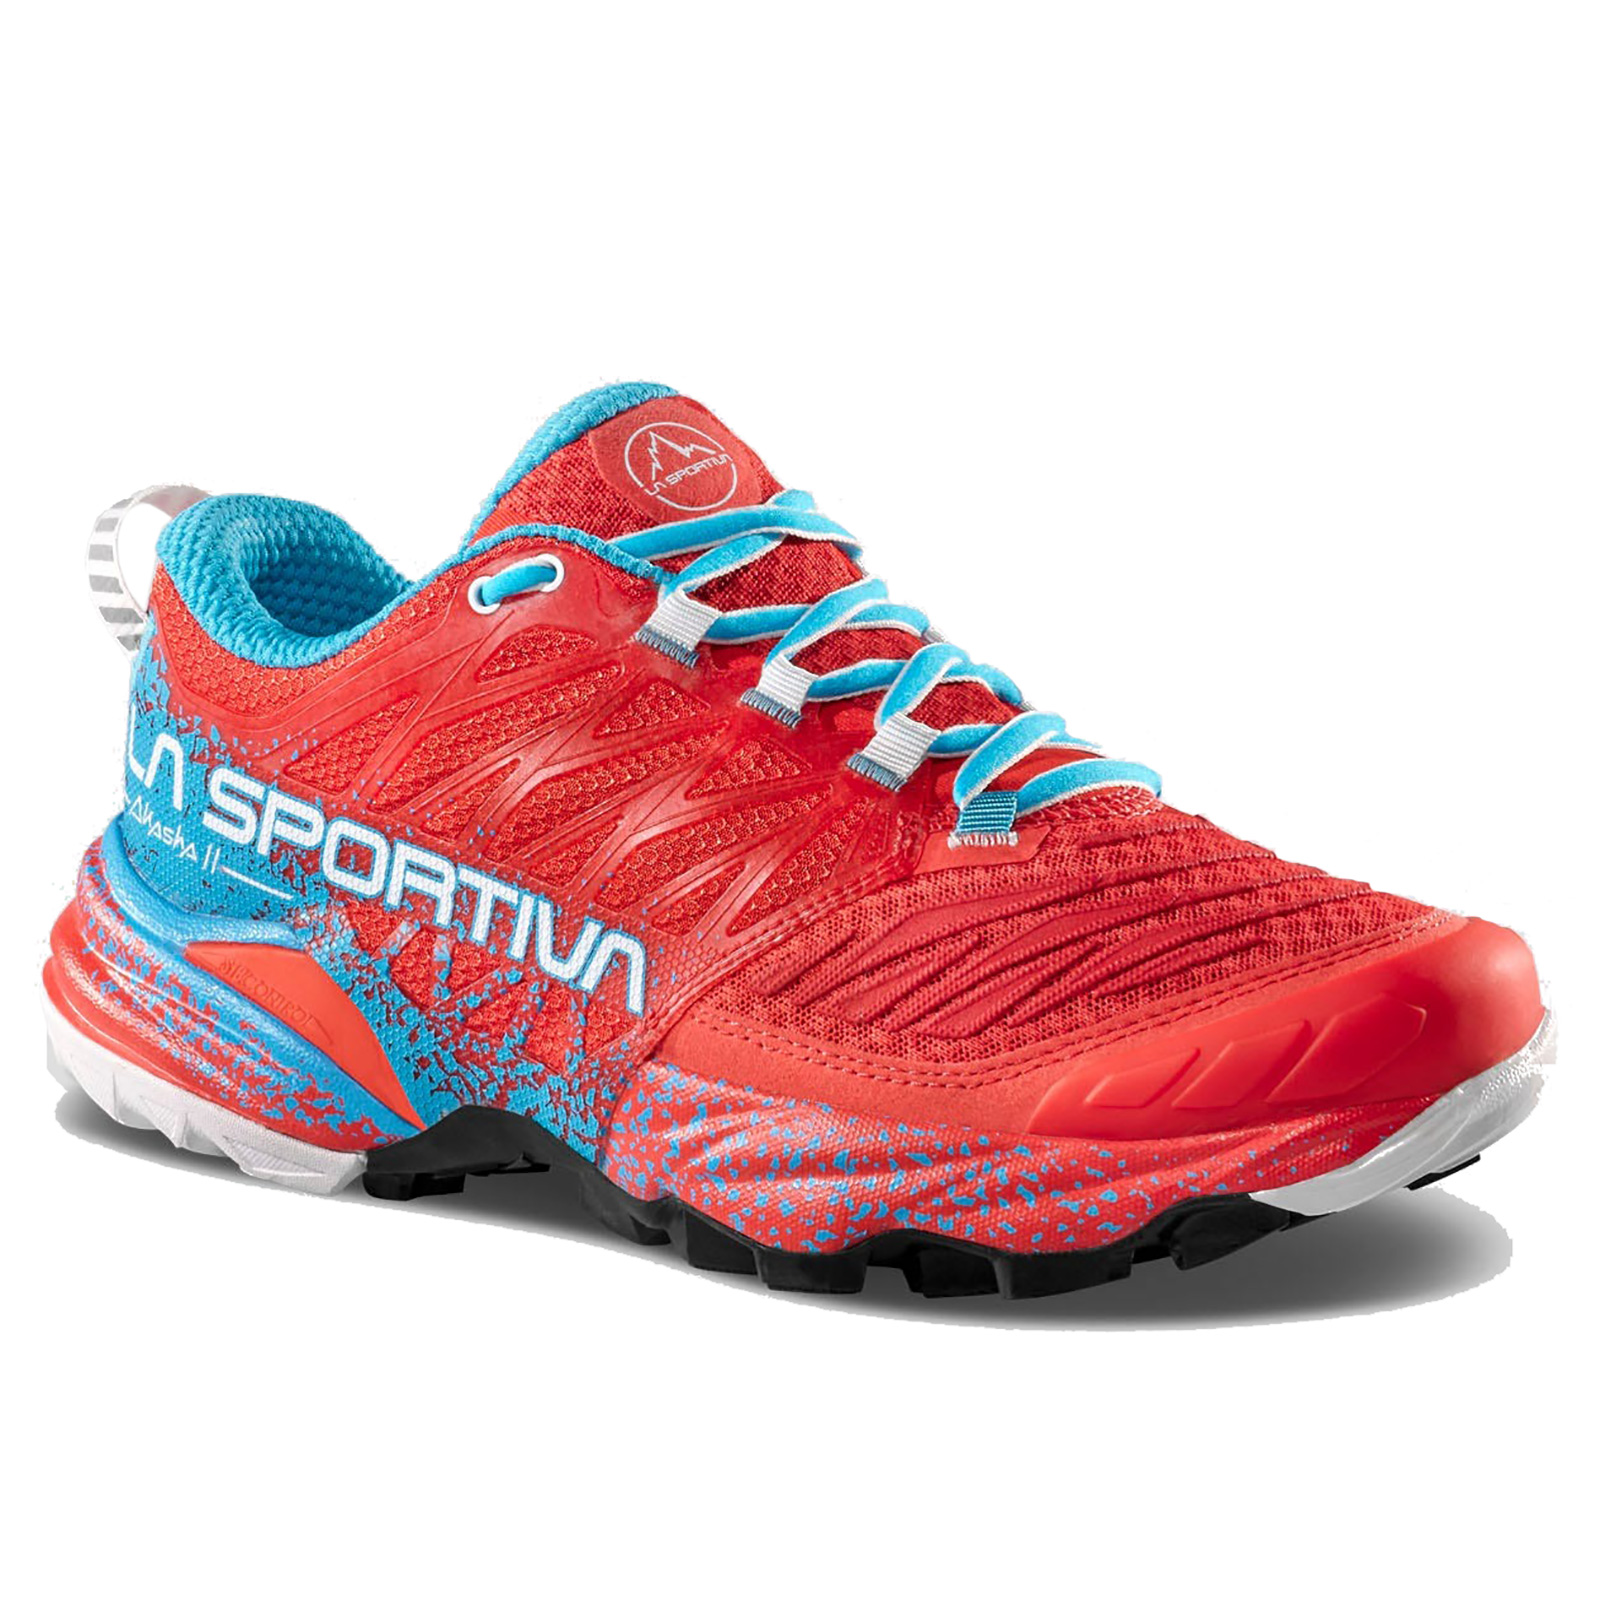 Giày chạy bộ nữ La Sportiva Running Shoes Akasha II 56B402612